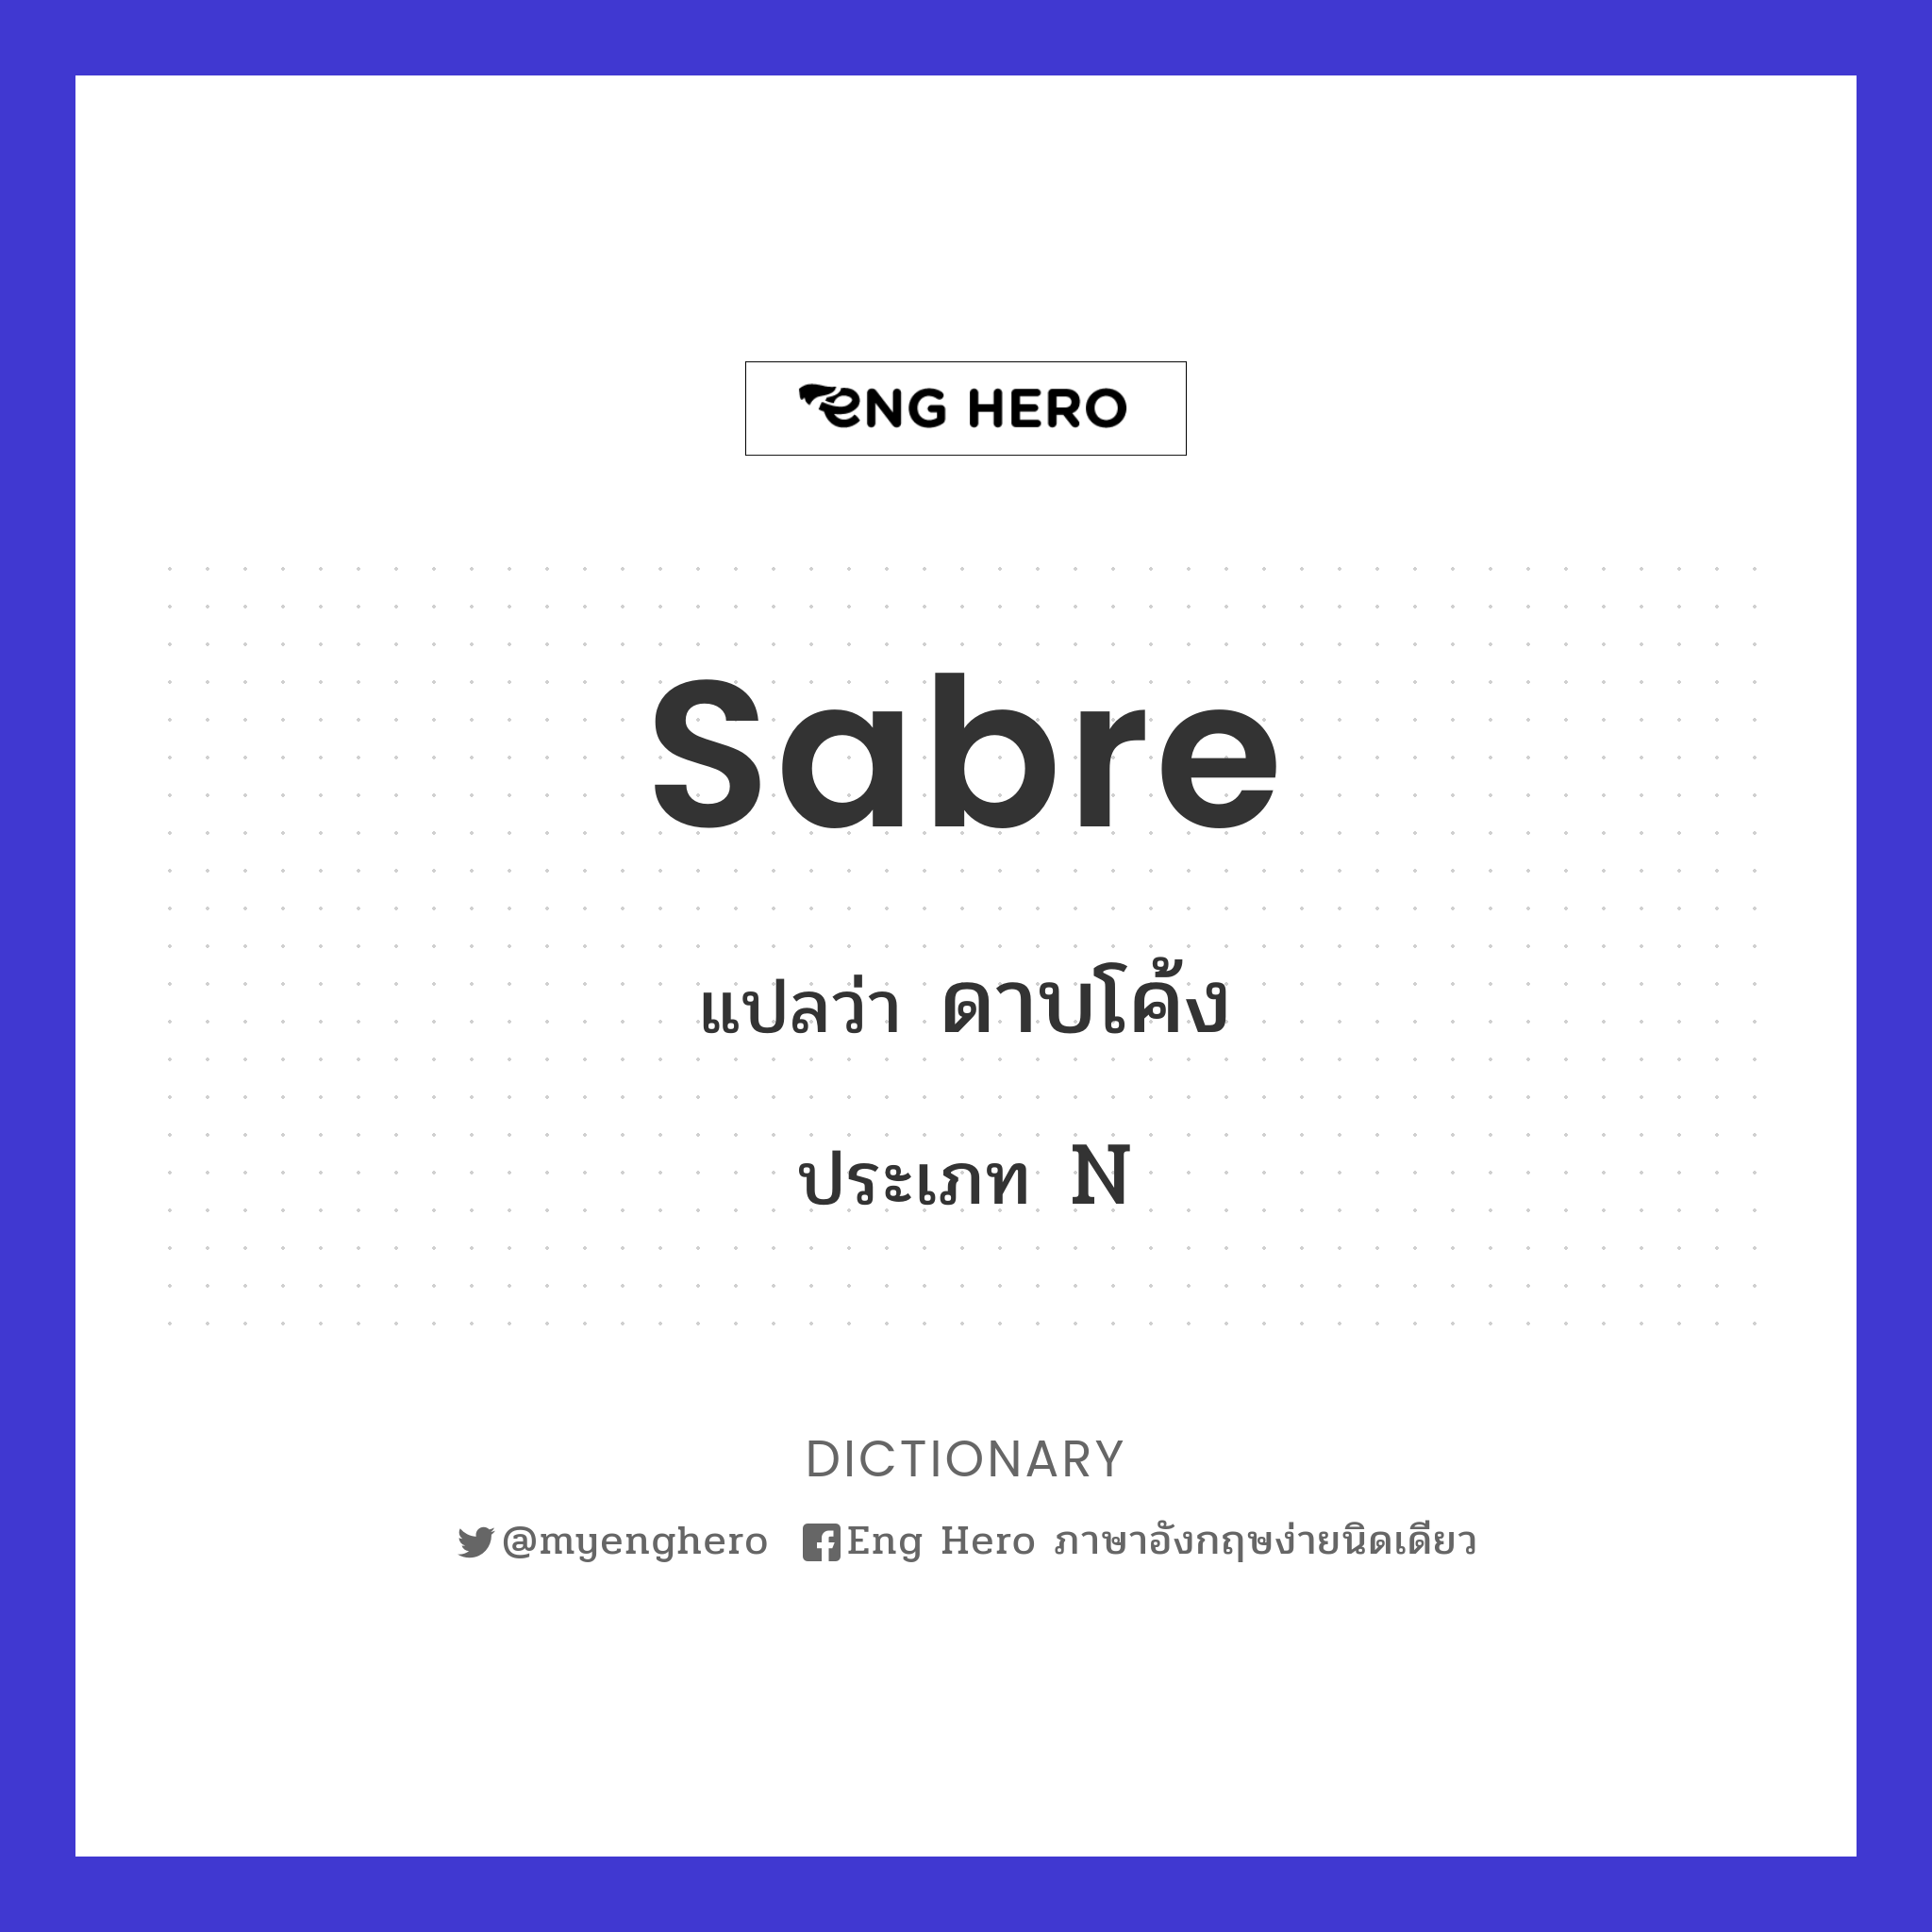 sabre